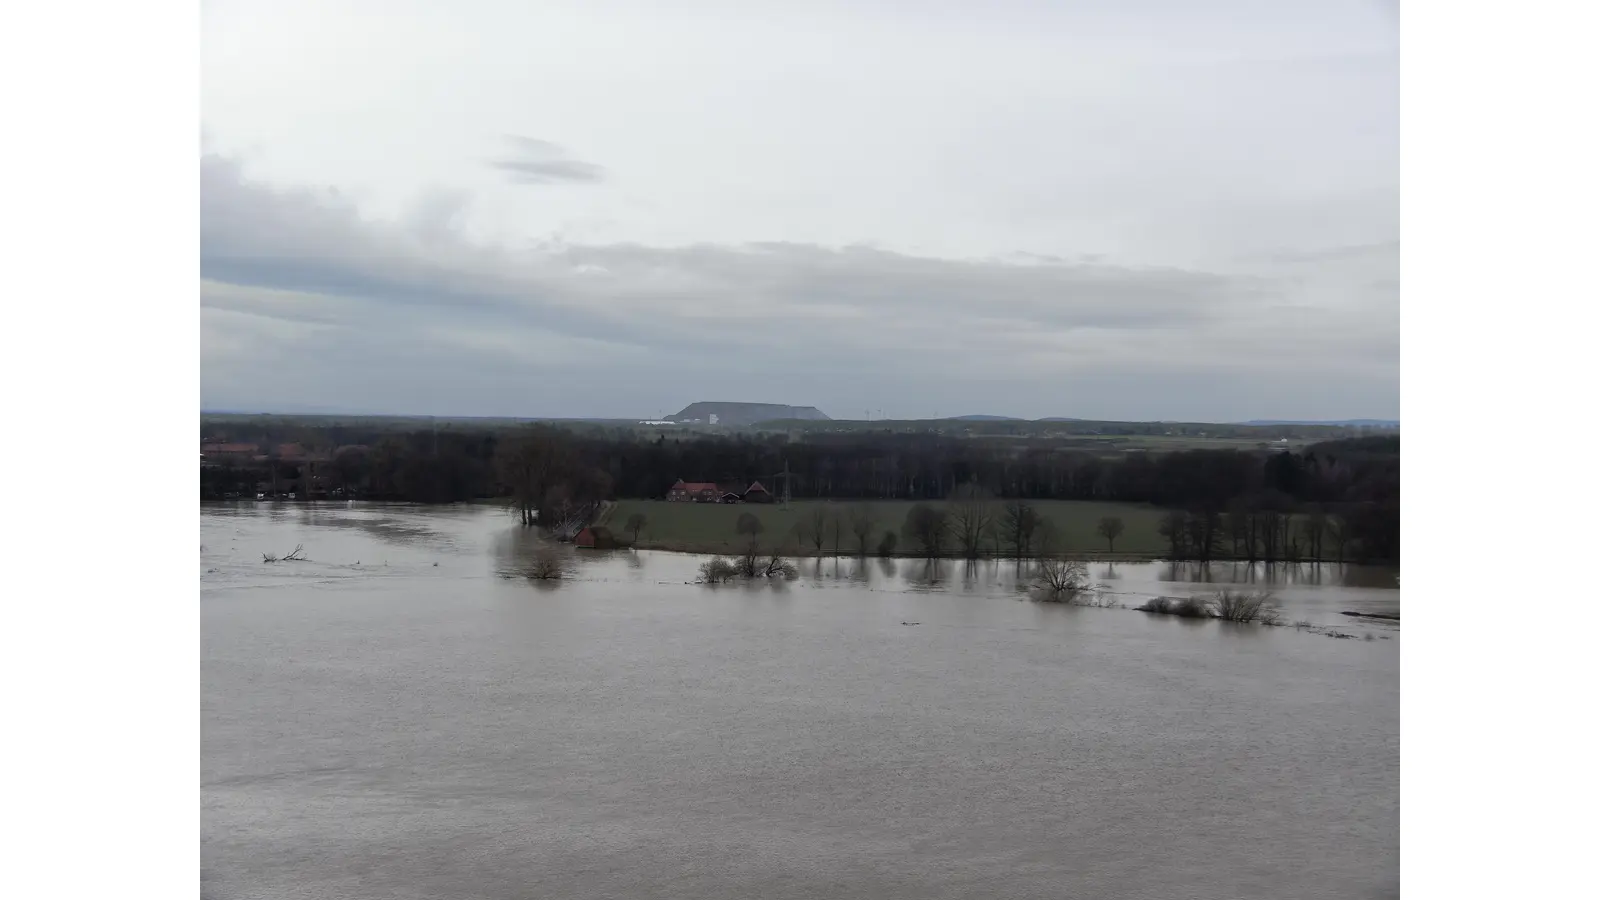 Der Blick von oben: Die Regionsfeuerwehr hat während des Hochwassers mit einer Drohne Aufnahmen von der Leine zwischen Liethe und Bordenau gemacht. (Foto: Regionsfeuerwehr)